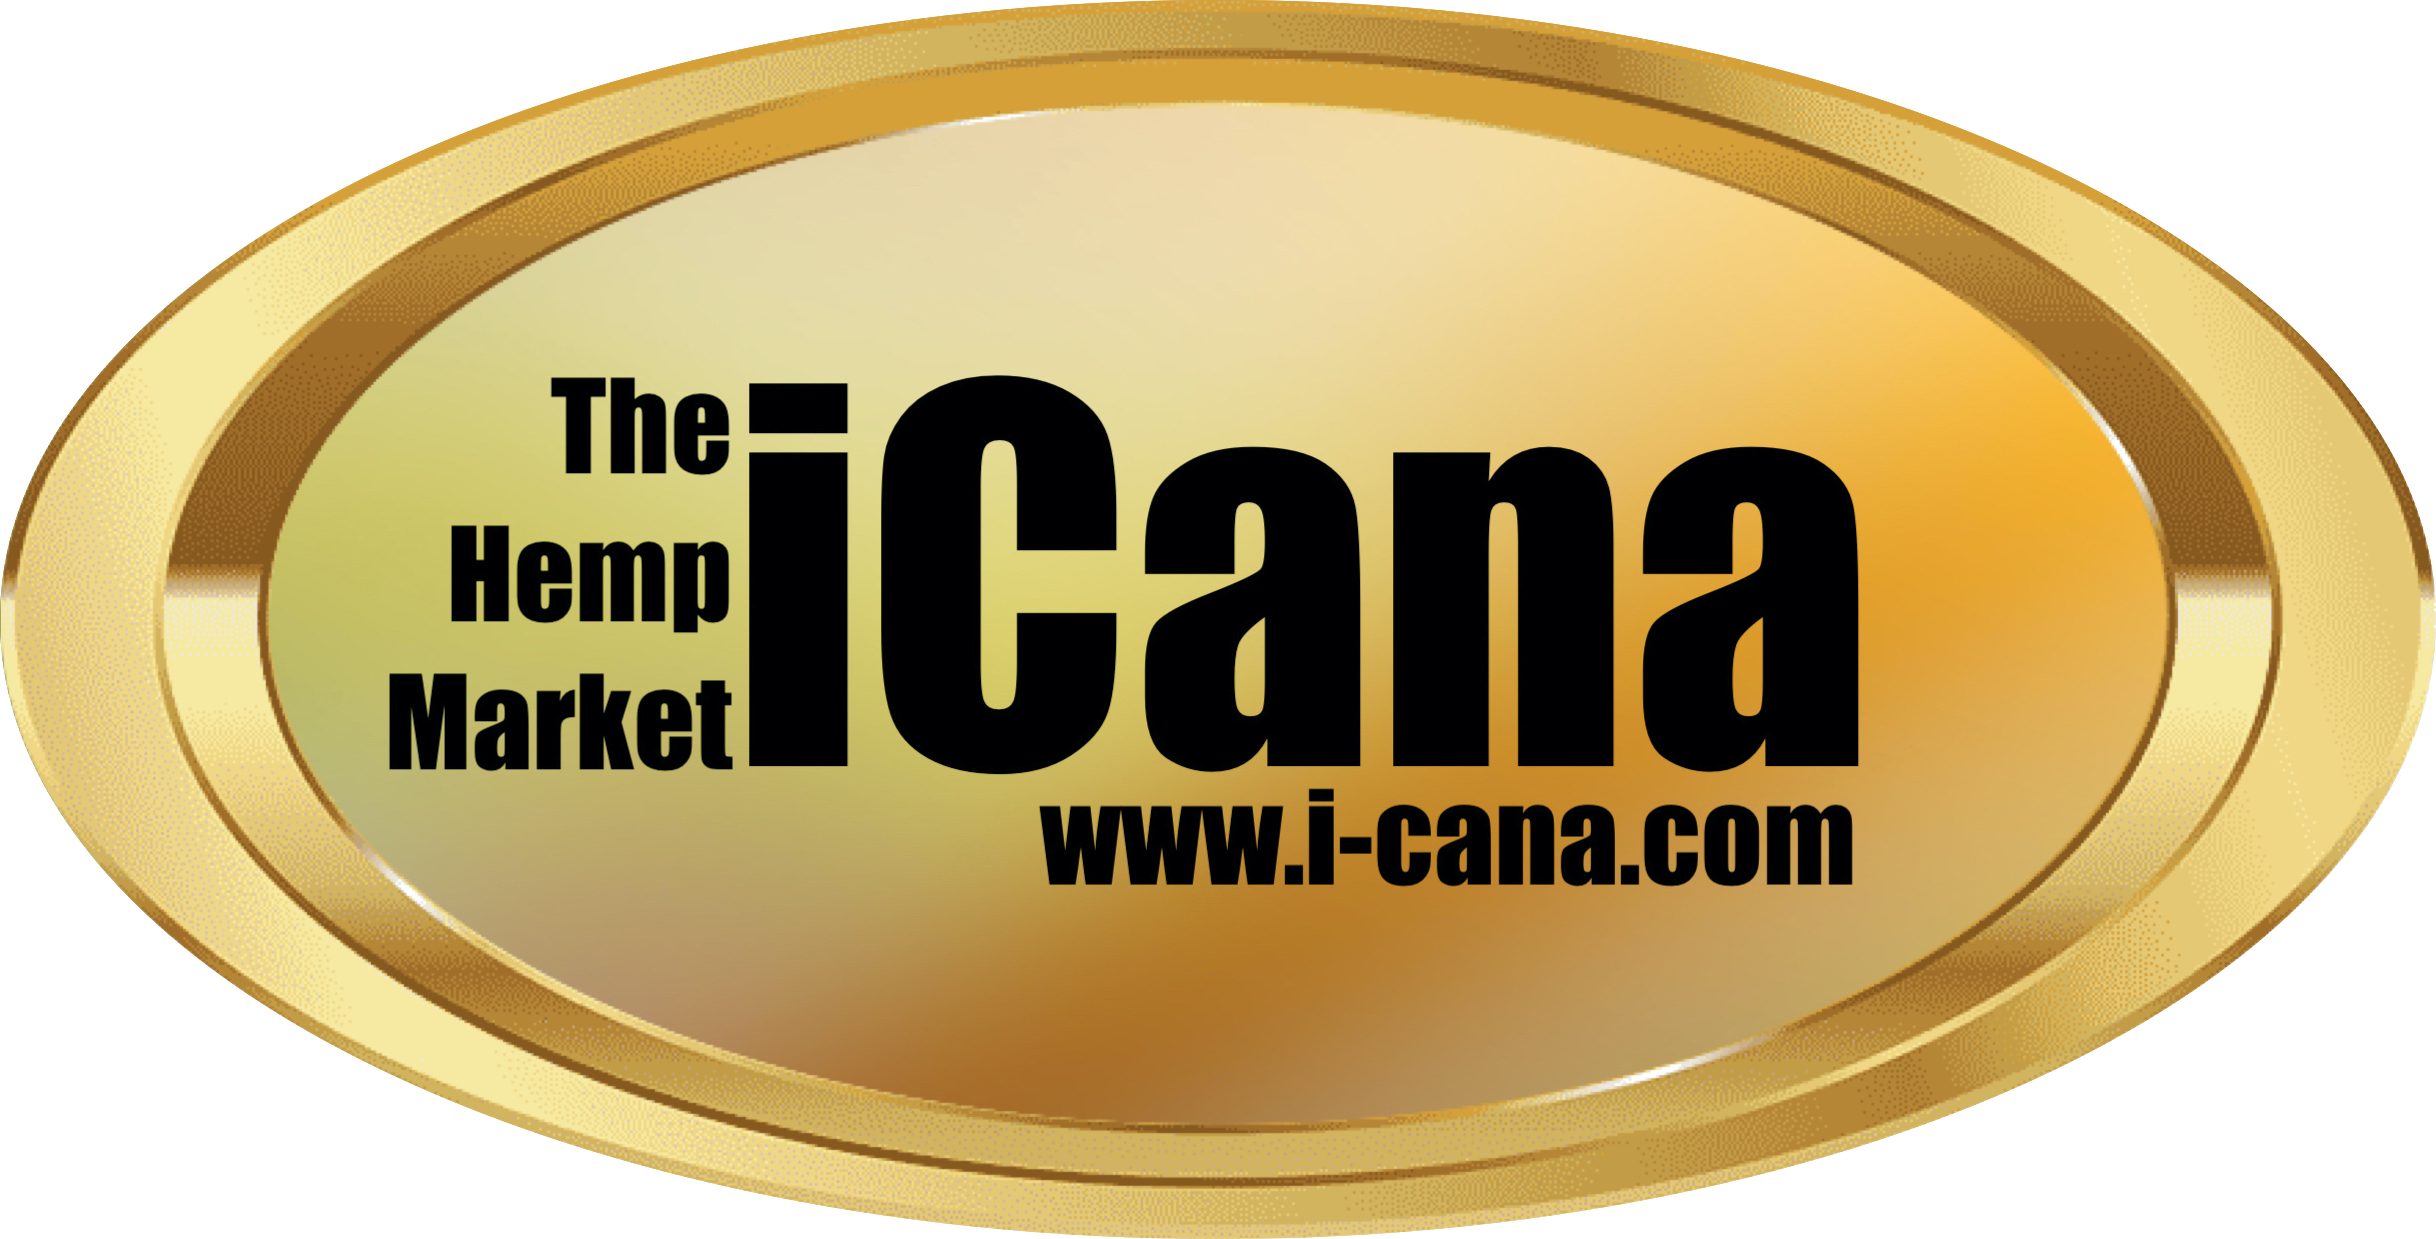 iCana-The Hemp Market